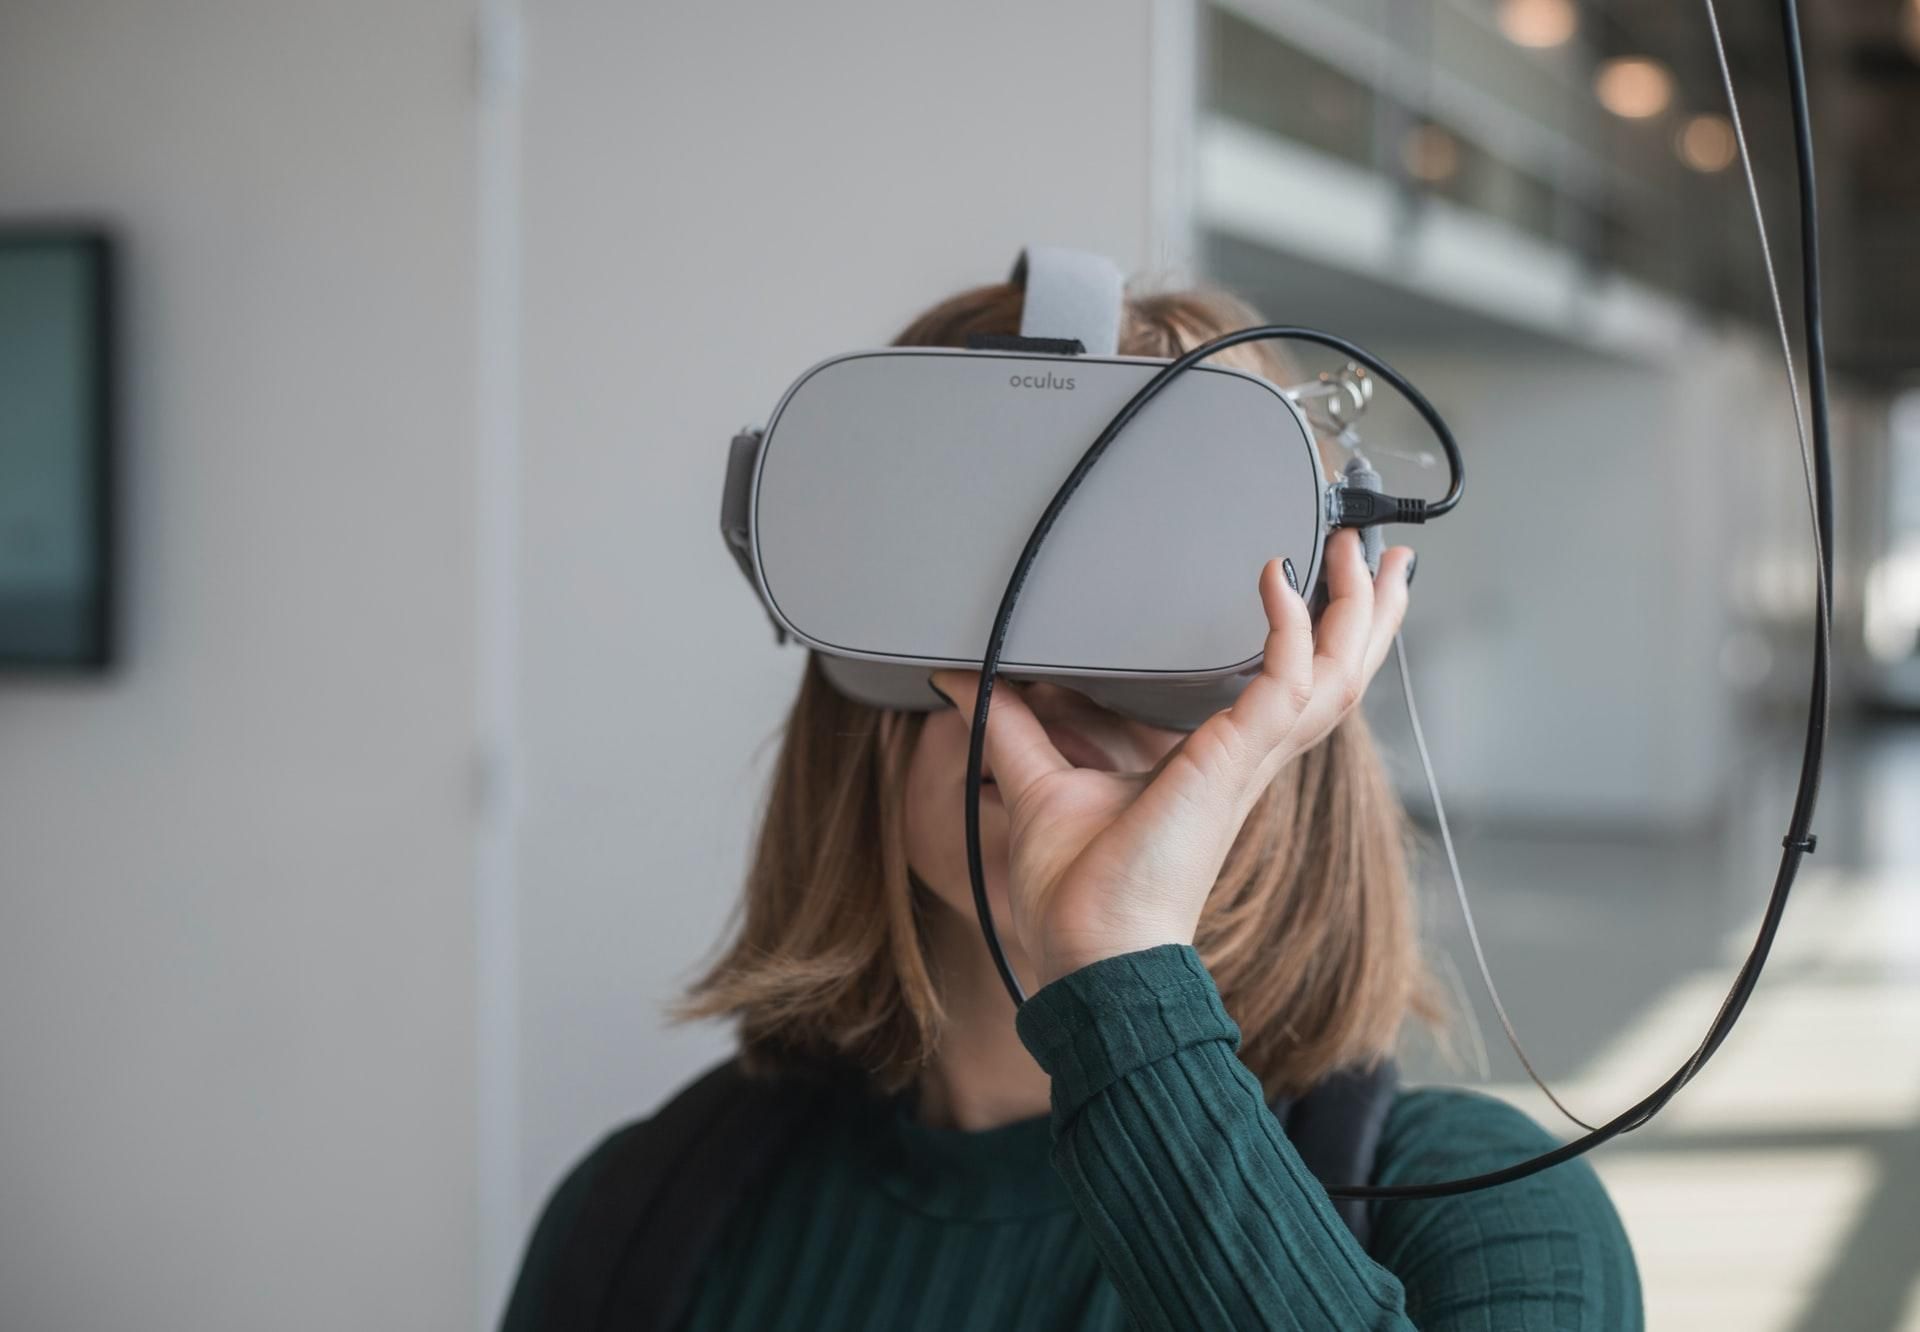 VR-терапия: в США разрешили лечение хронической боли с помощью виртуальной реальности